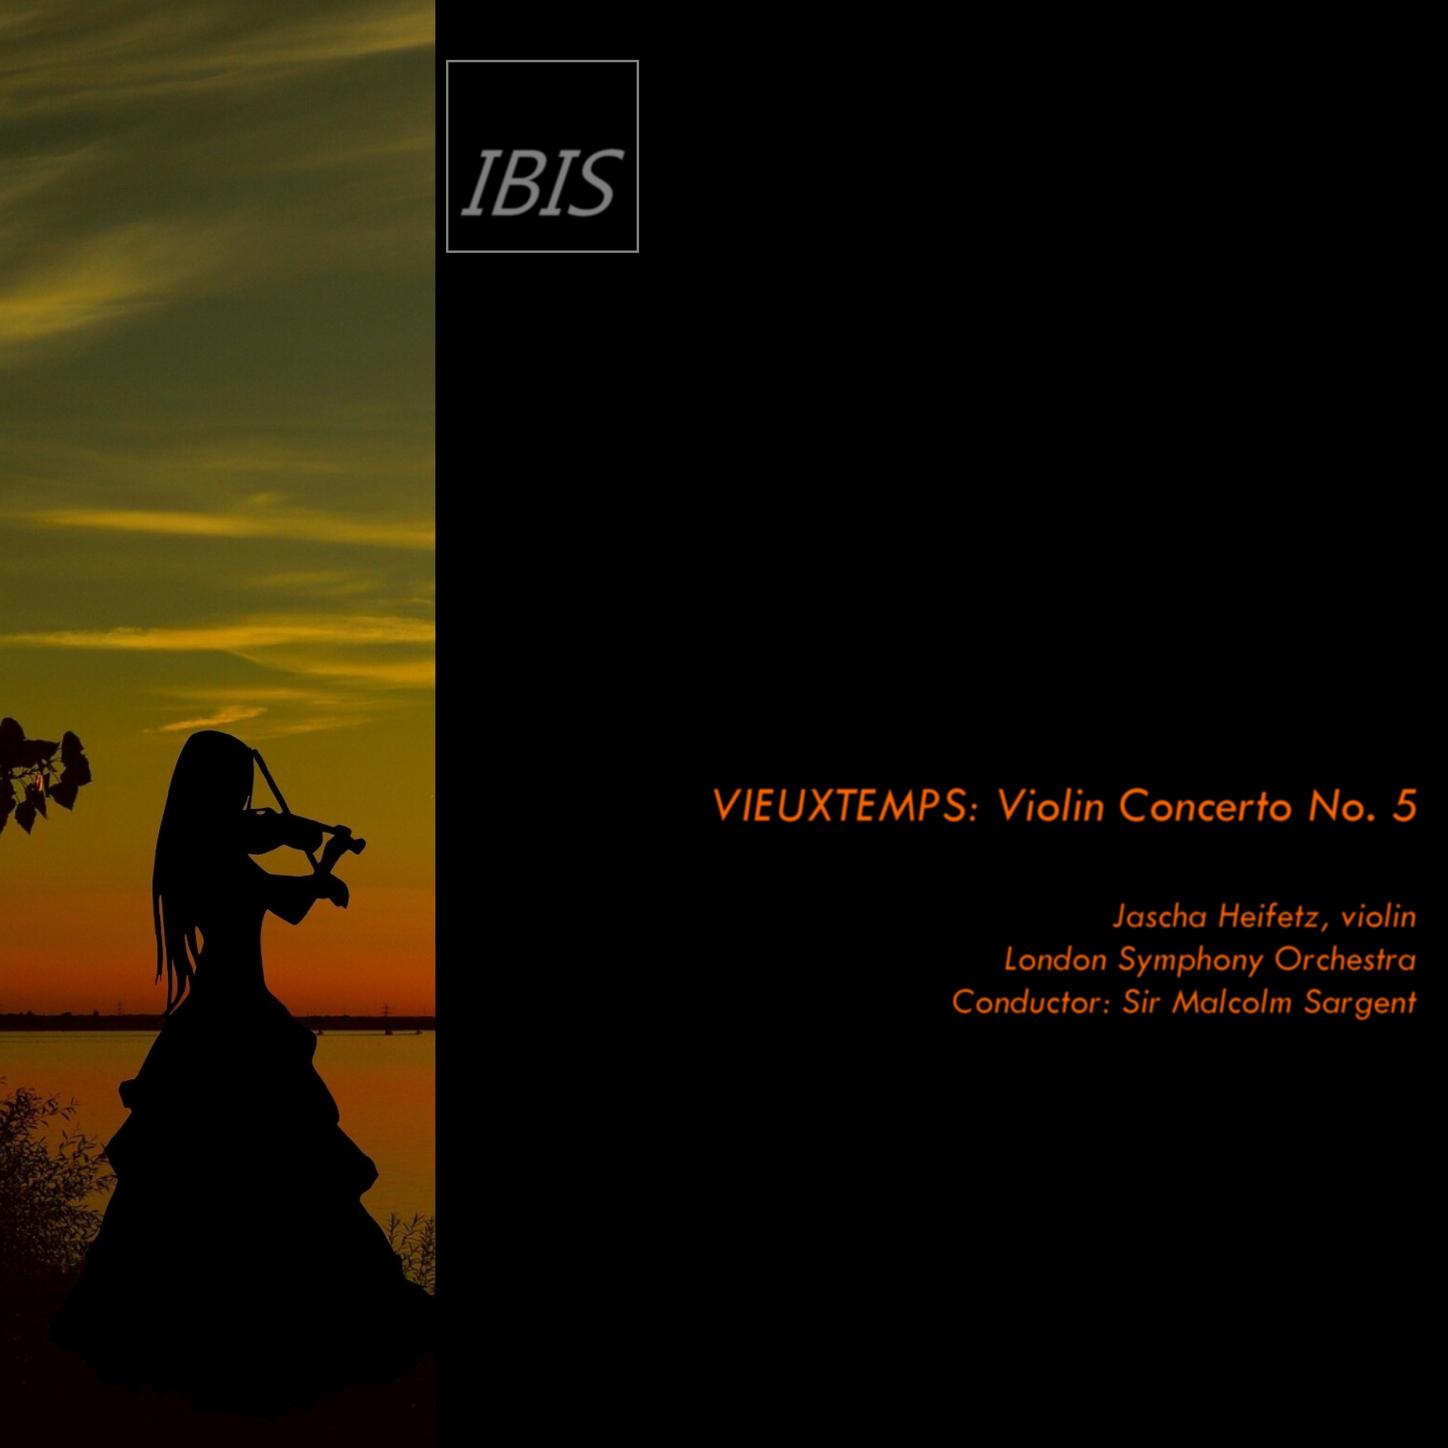 Vieuxtemps: Violin Concerto No.5, Op. 37: III. Allegro con fuoco